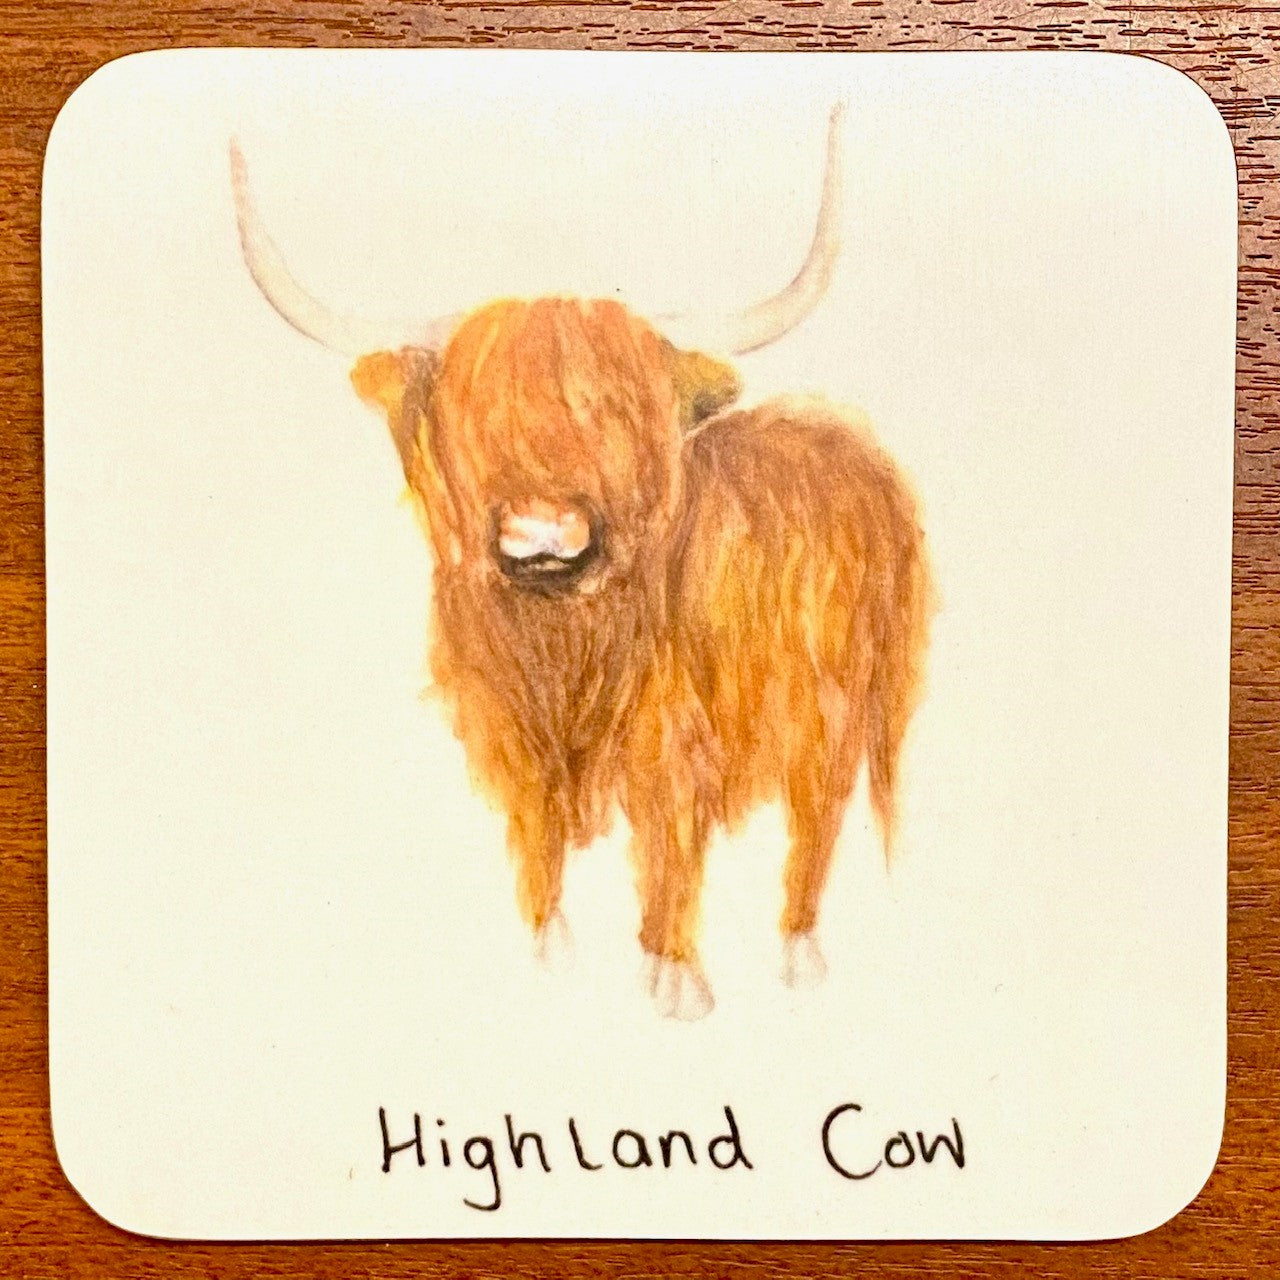 Highland Cow Untersetzer